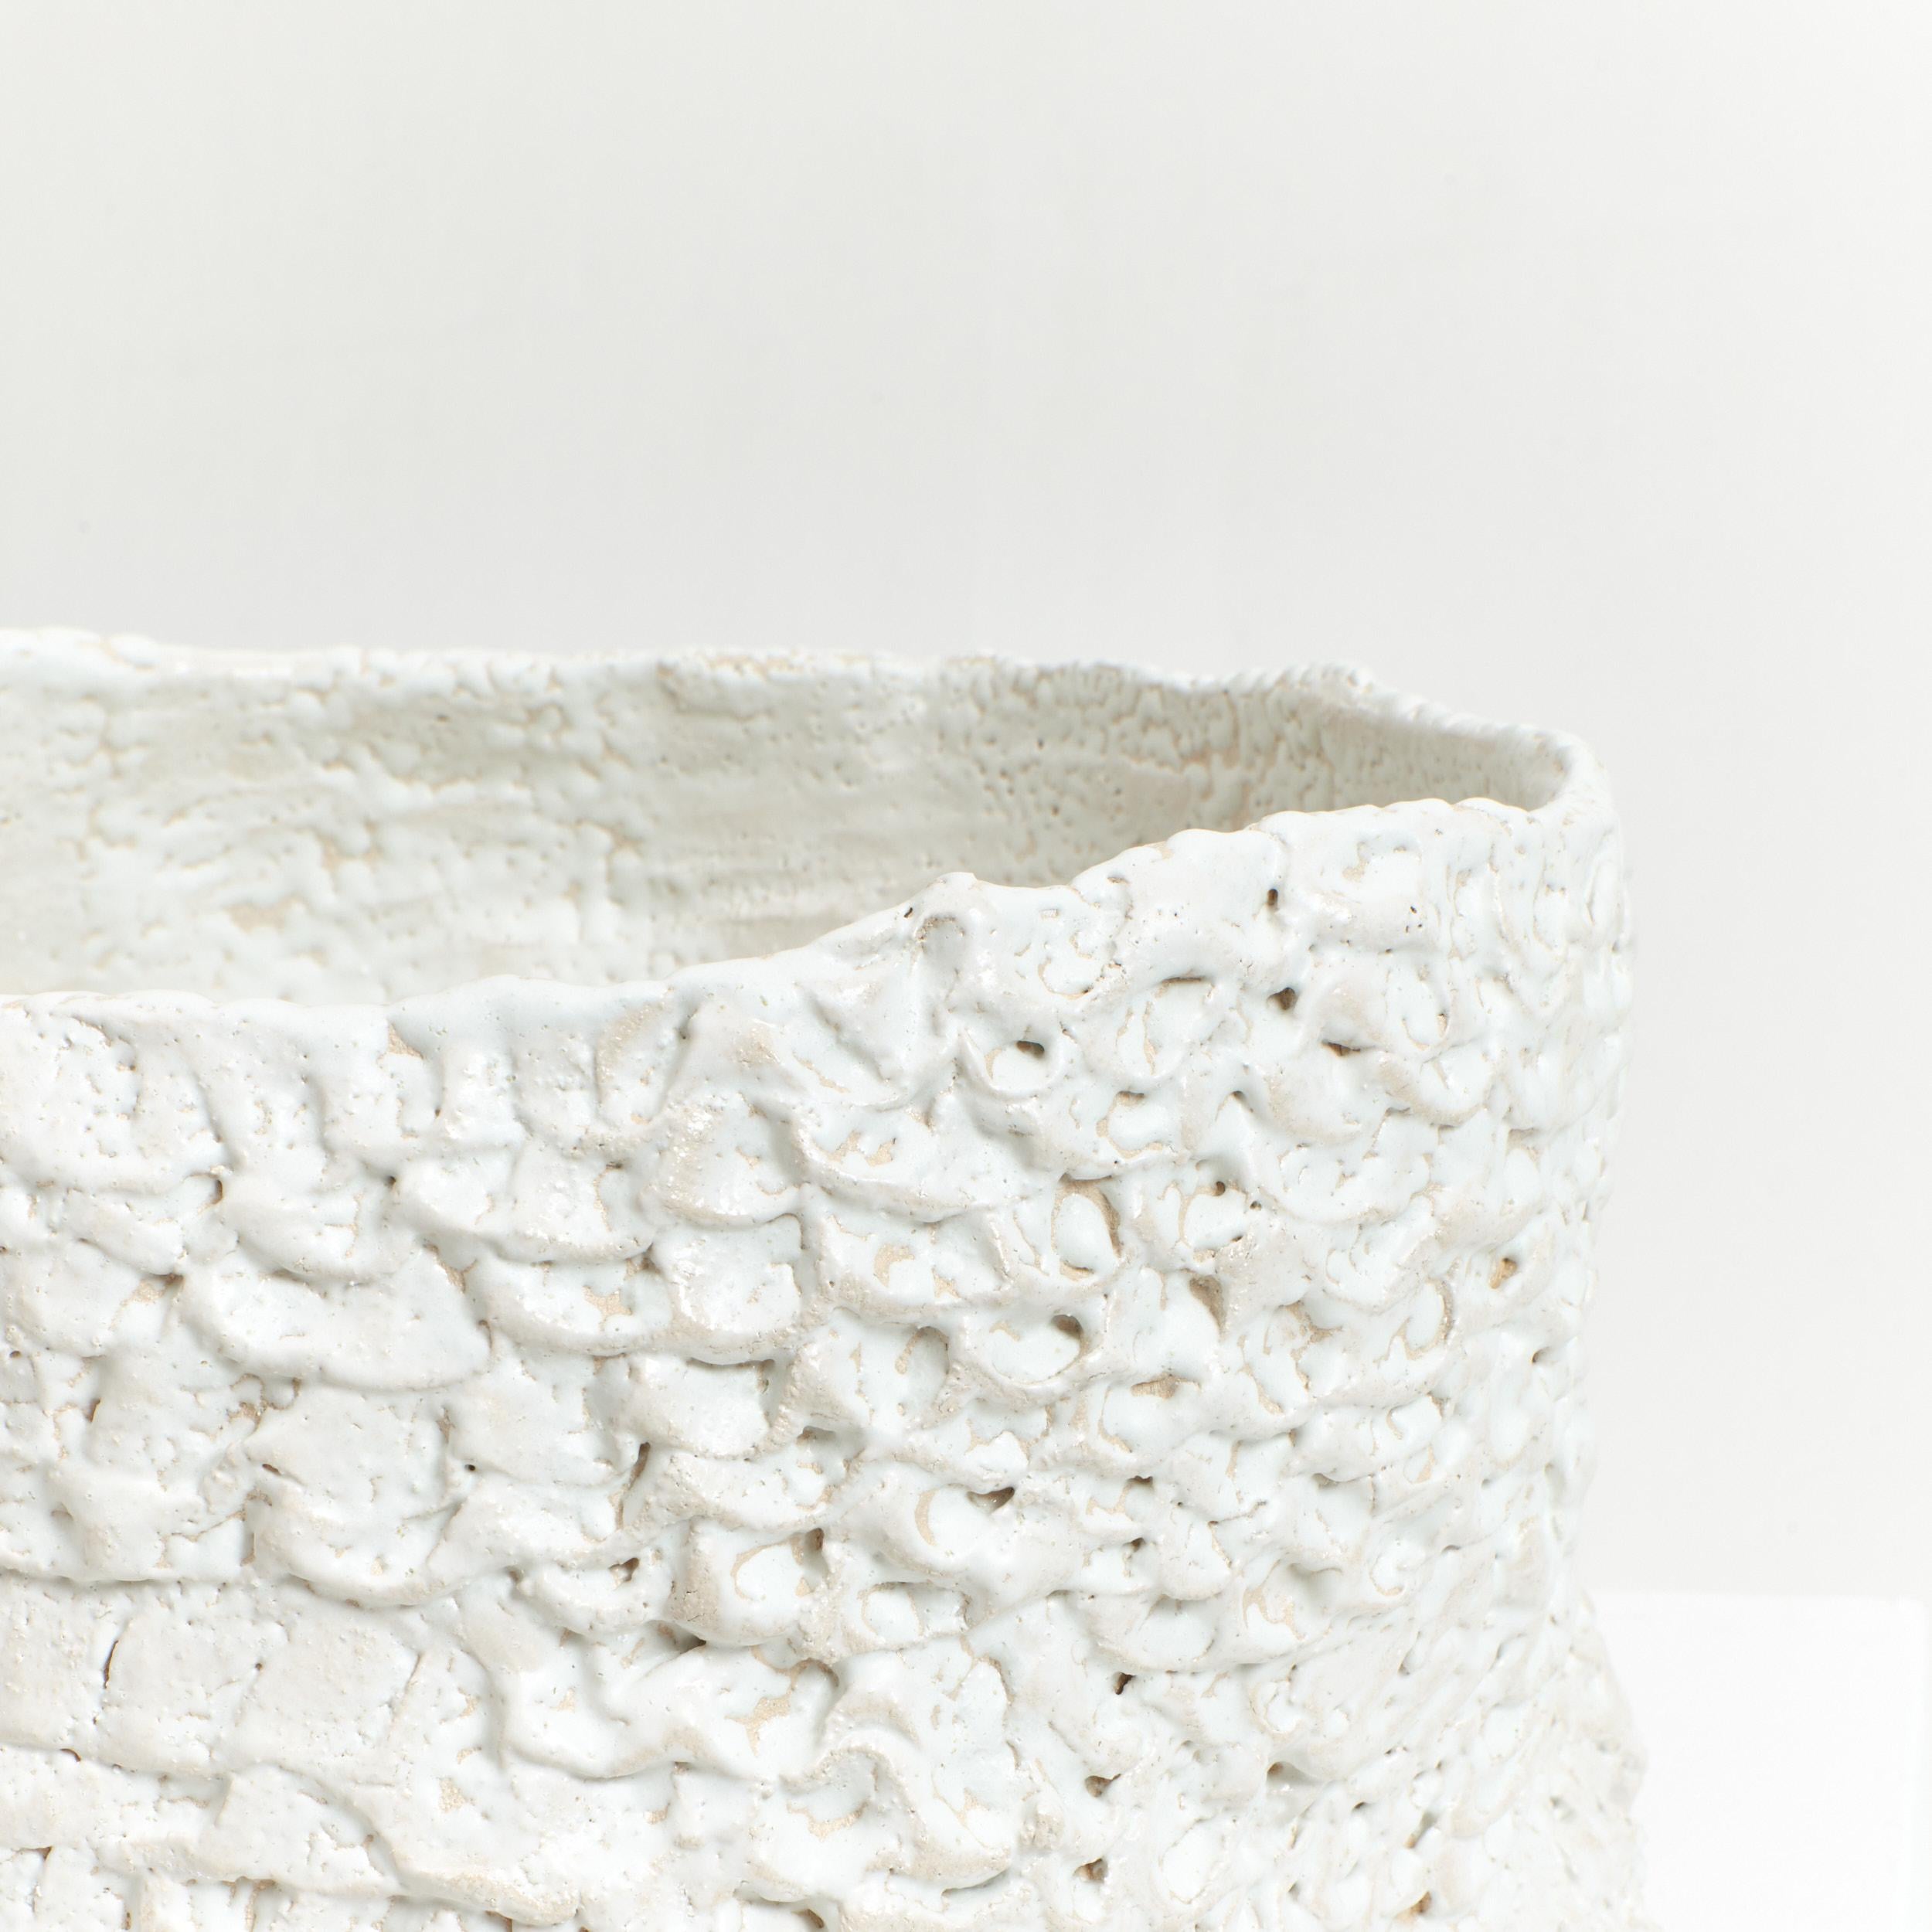 Casa Pflanzgefäß Nr. 1 in Weiß
Entworfen von Projekt 213A im Jahr 2023

Kunsthandwerkliche Pflanzgefäße, die von erfahrenen Handwerkern in der Werkstatt von project 213A hergestellt werden. Handgeformte Keramik mit strukturierter Oberfläche in